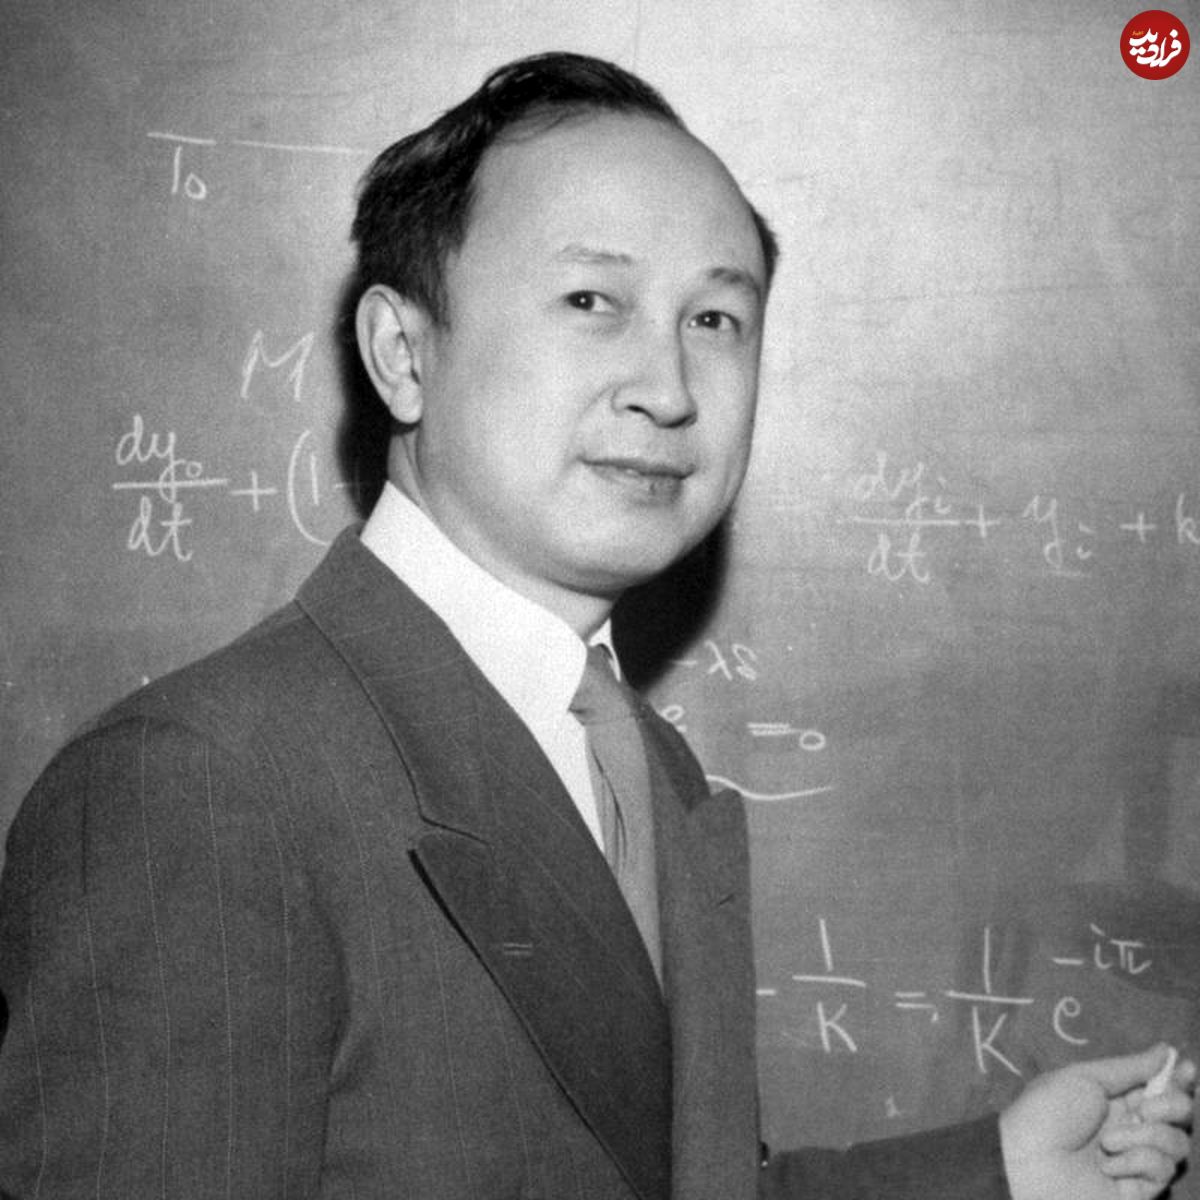 چن شیسن؛ پدر علم هوا و فضا در چین